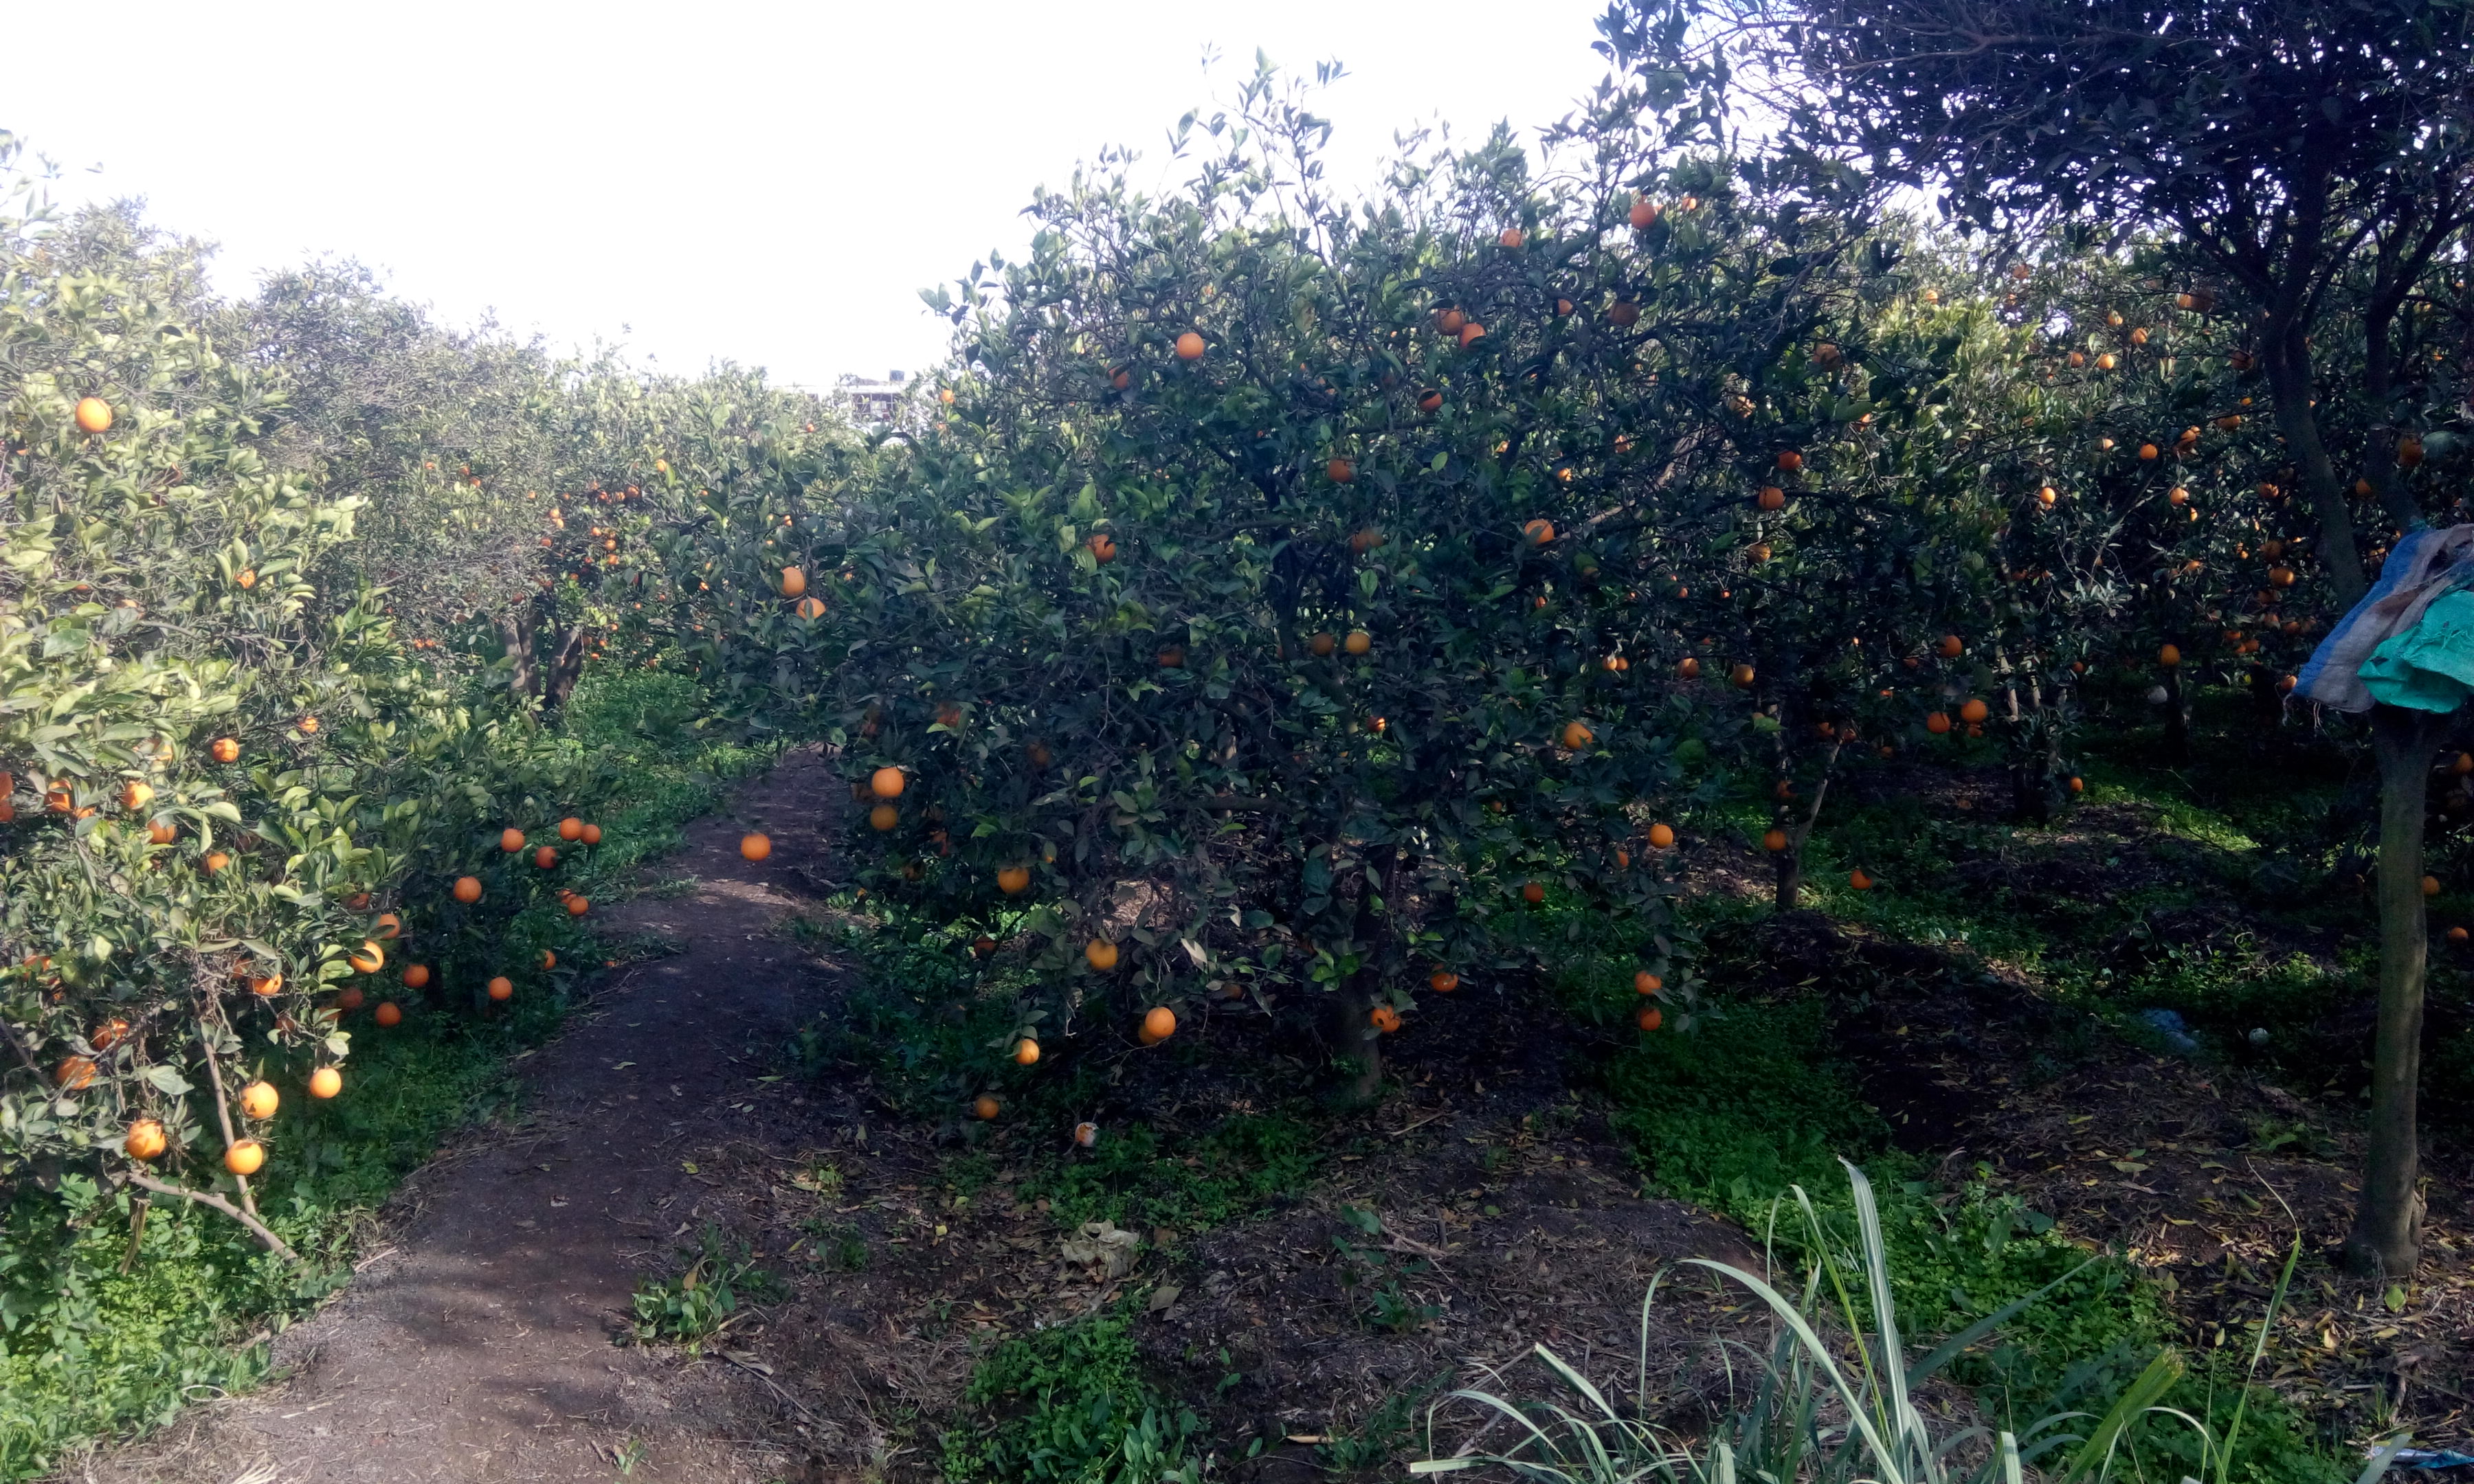 المزارع تتزين بالبرتقال